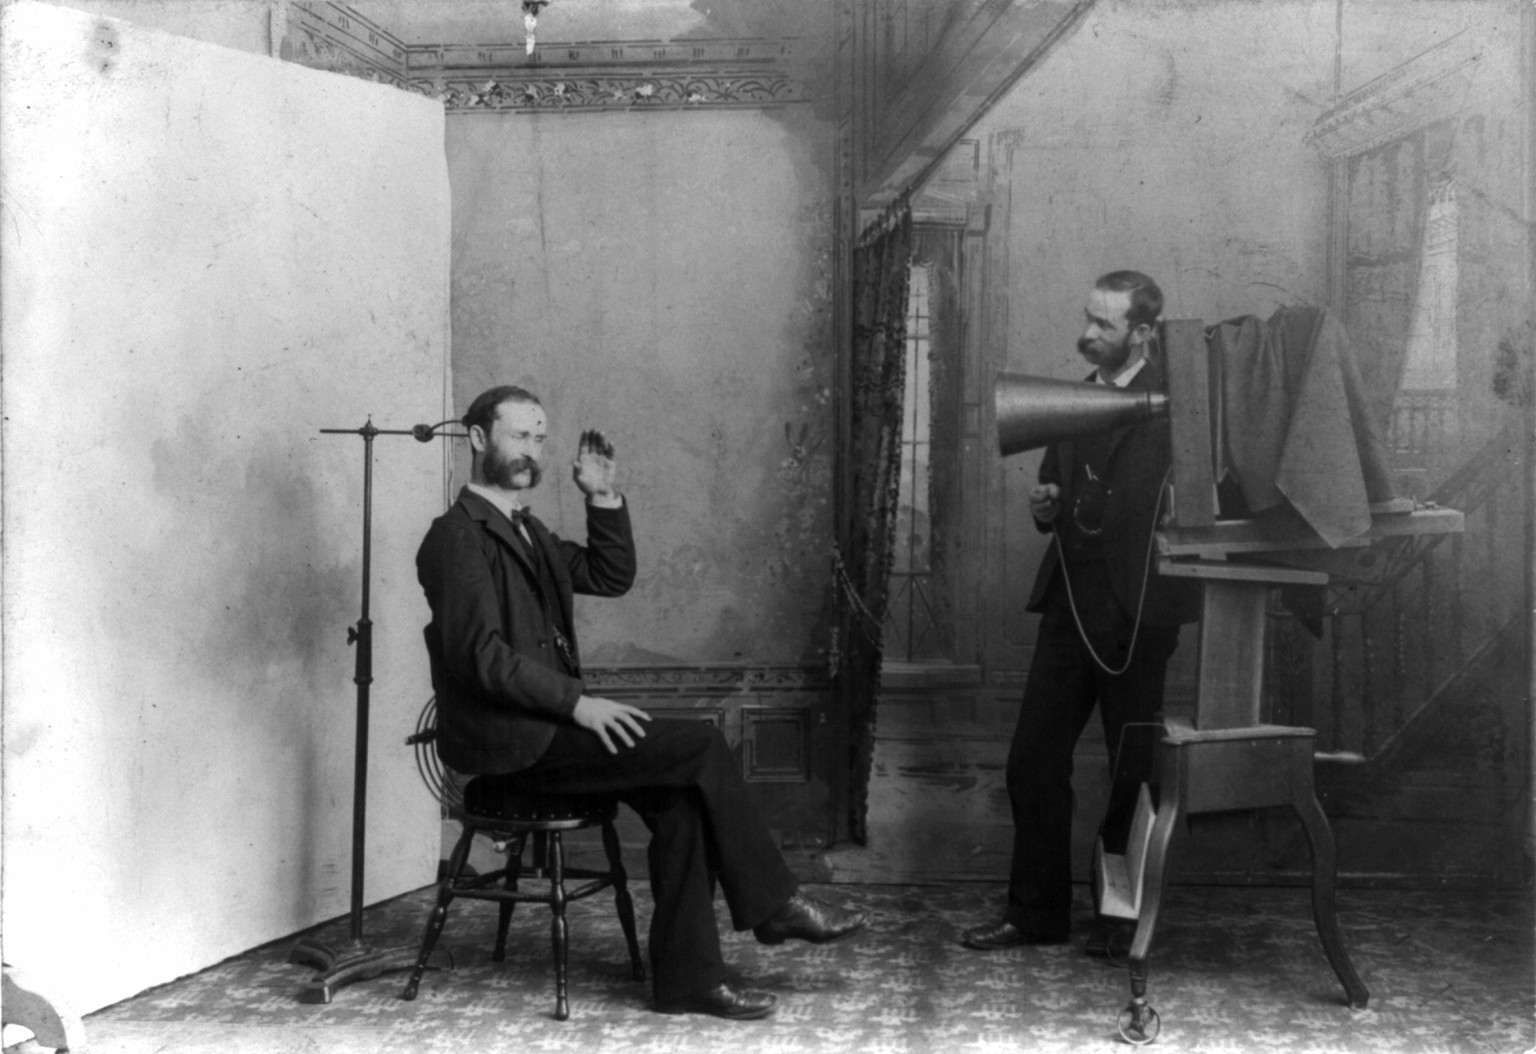 Berlin, 1893: Ein Fotograf fotografiert sich selbst, eine Satire auf die frühe Fotografiepraxis, die mit ellenlangen Belichtungszeiten kämpfen musste.